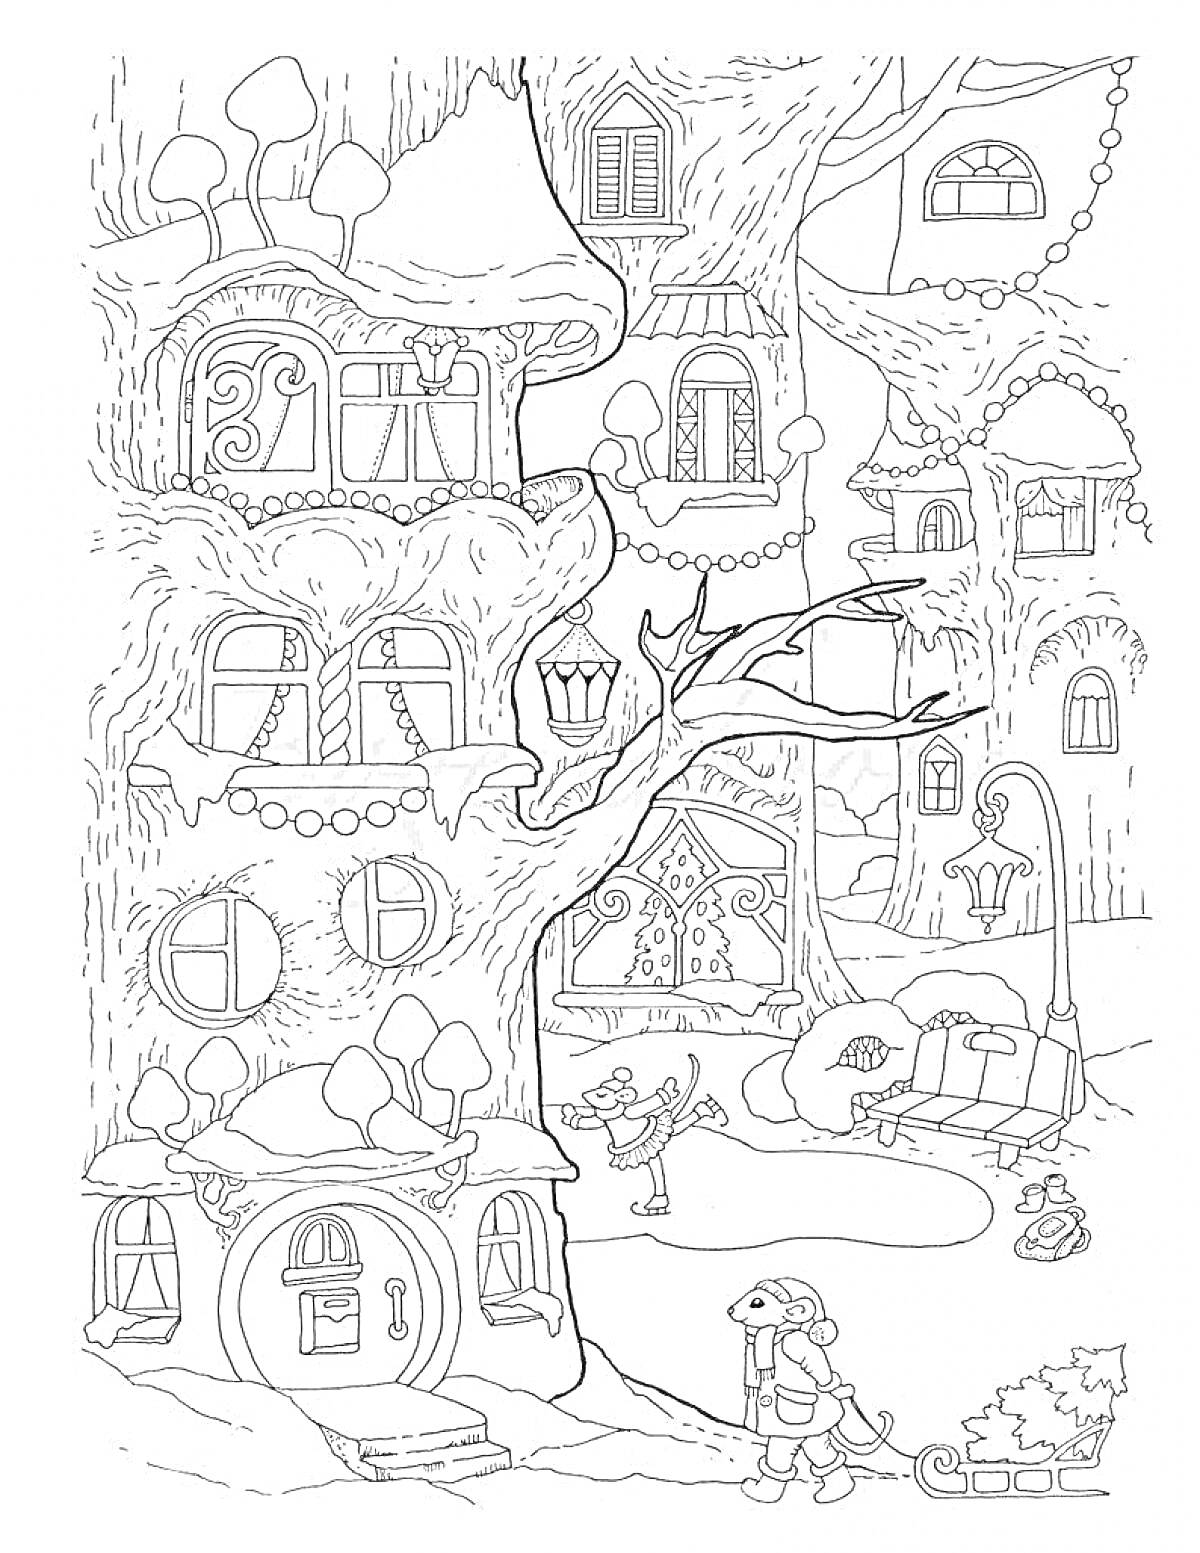 Раскраска Городок в дереве. В домах деревообработкой, улица с фонарем и фонарным столбом, маленький человек с сани и елкой.